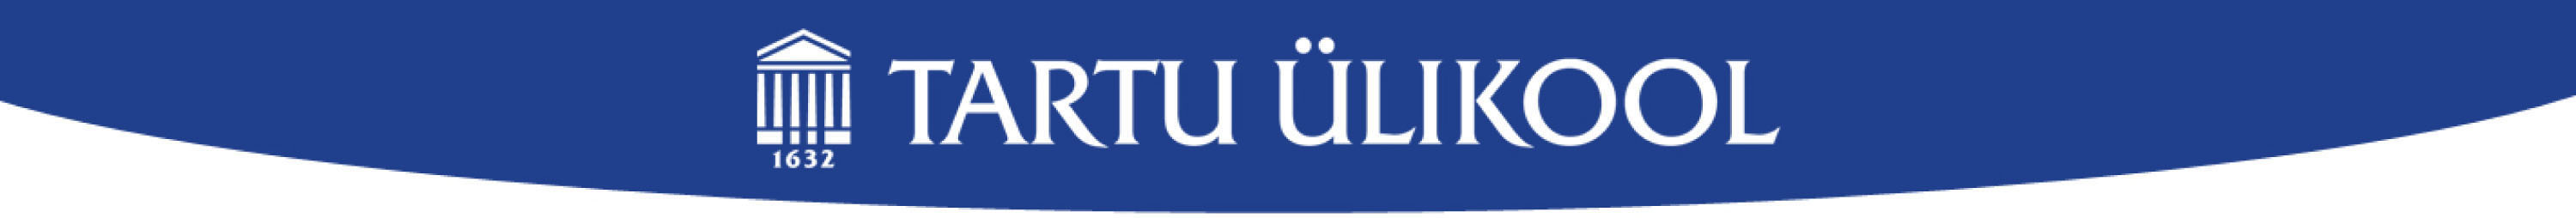 Tartu Ülikooli logo